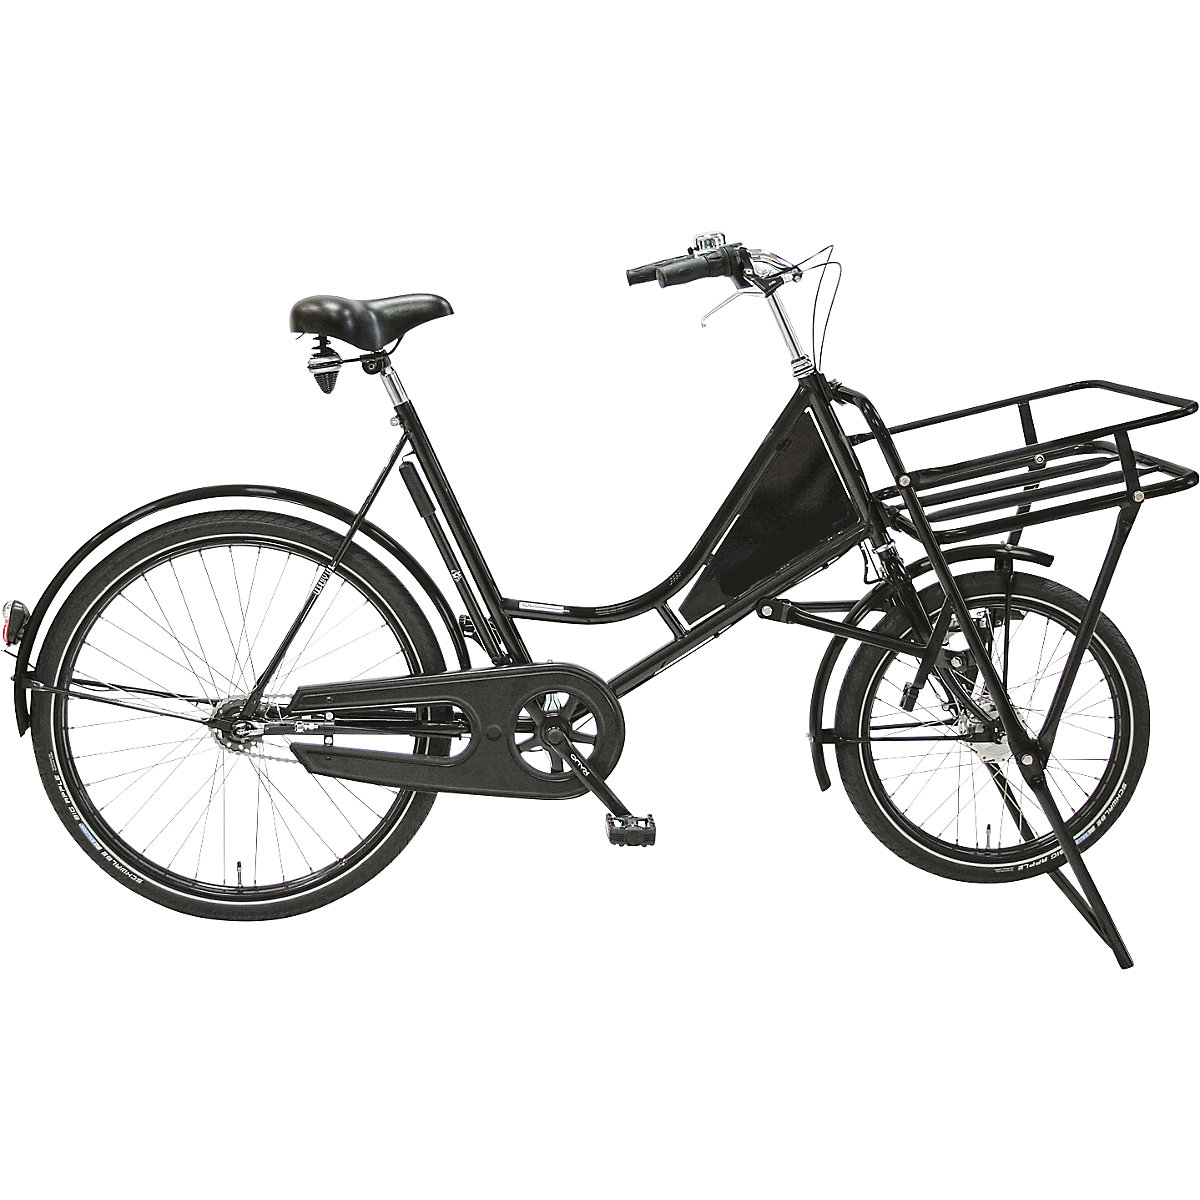 Bicicleta para cargas pesadas CLASSIC, bicicleta para o transporte dentro da empresa, capacidade de carga 150 kg, a partir de 5 unid.-5